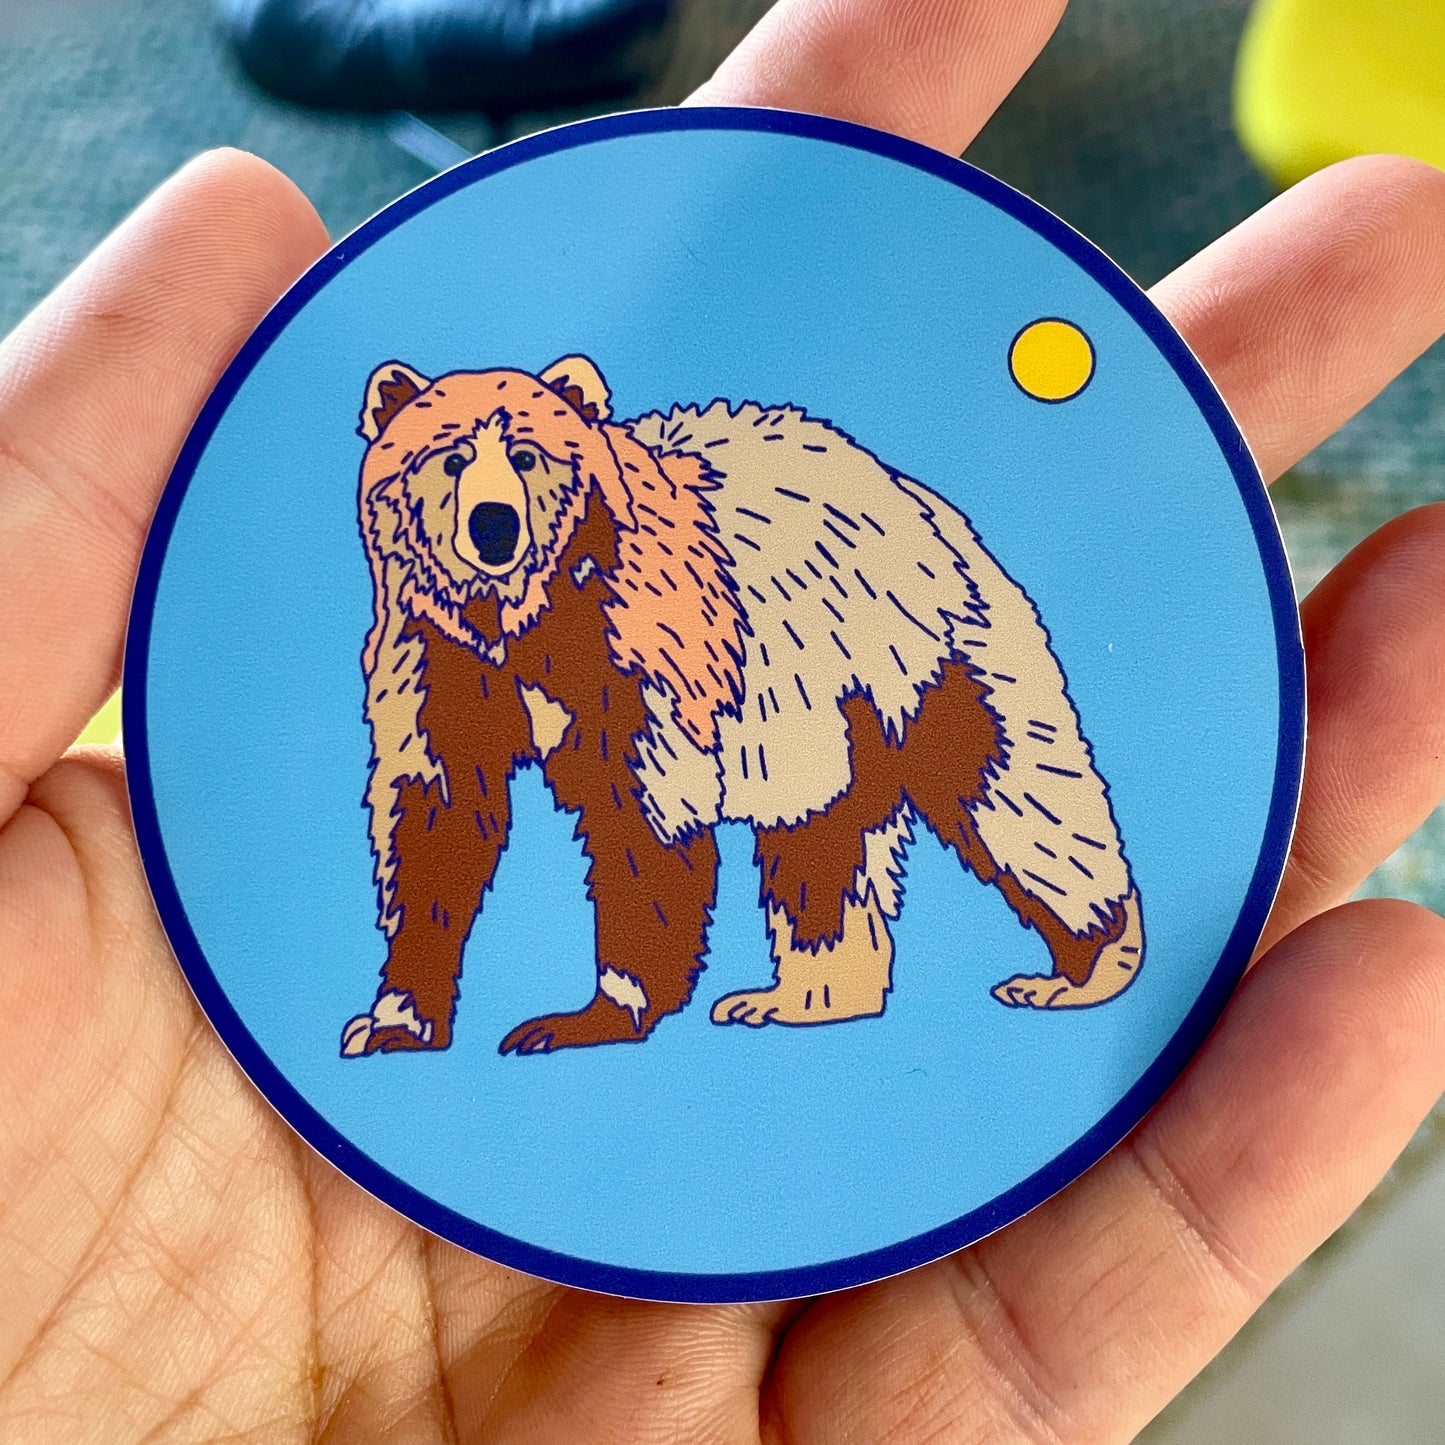 It's a Bear! Sticker